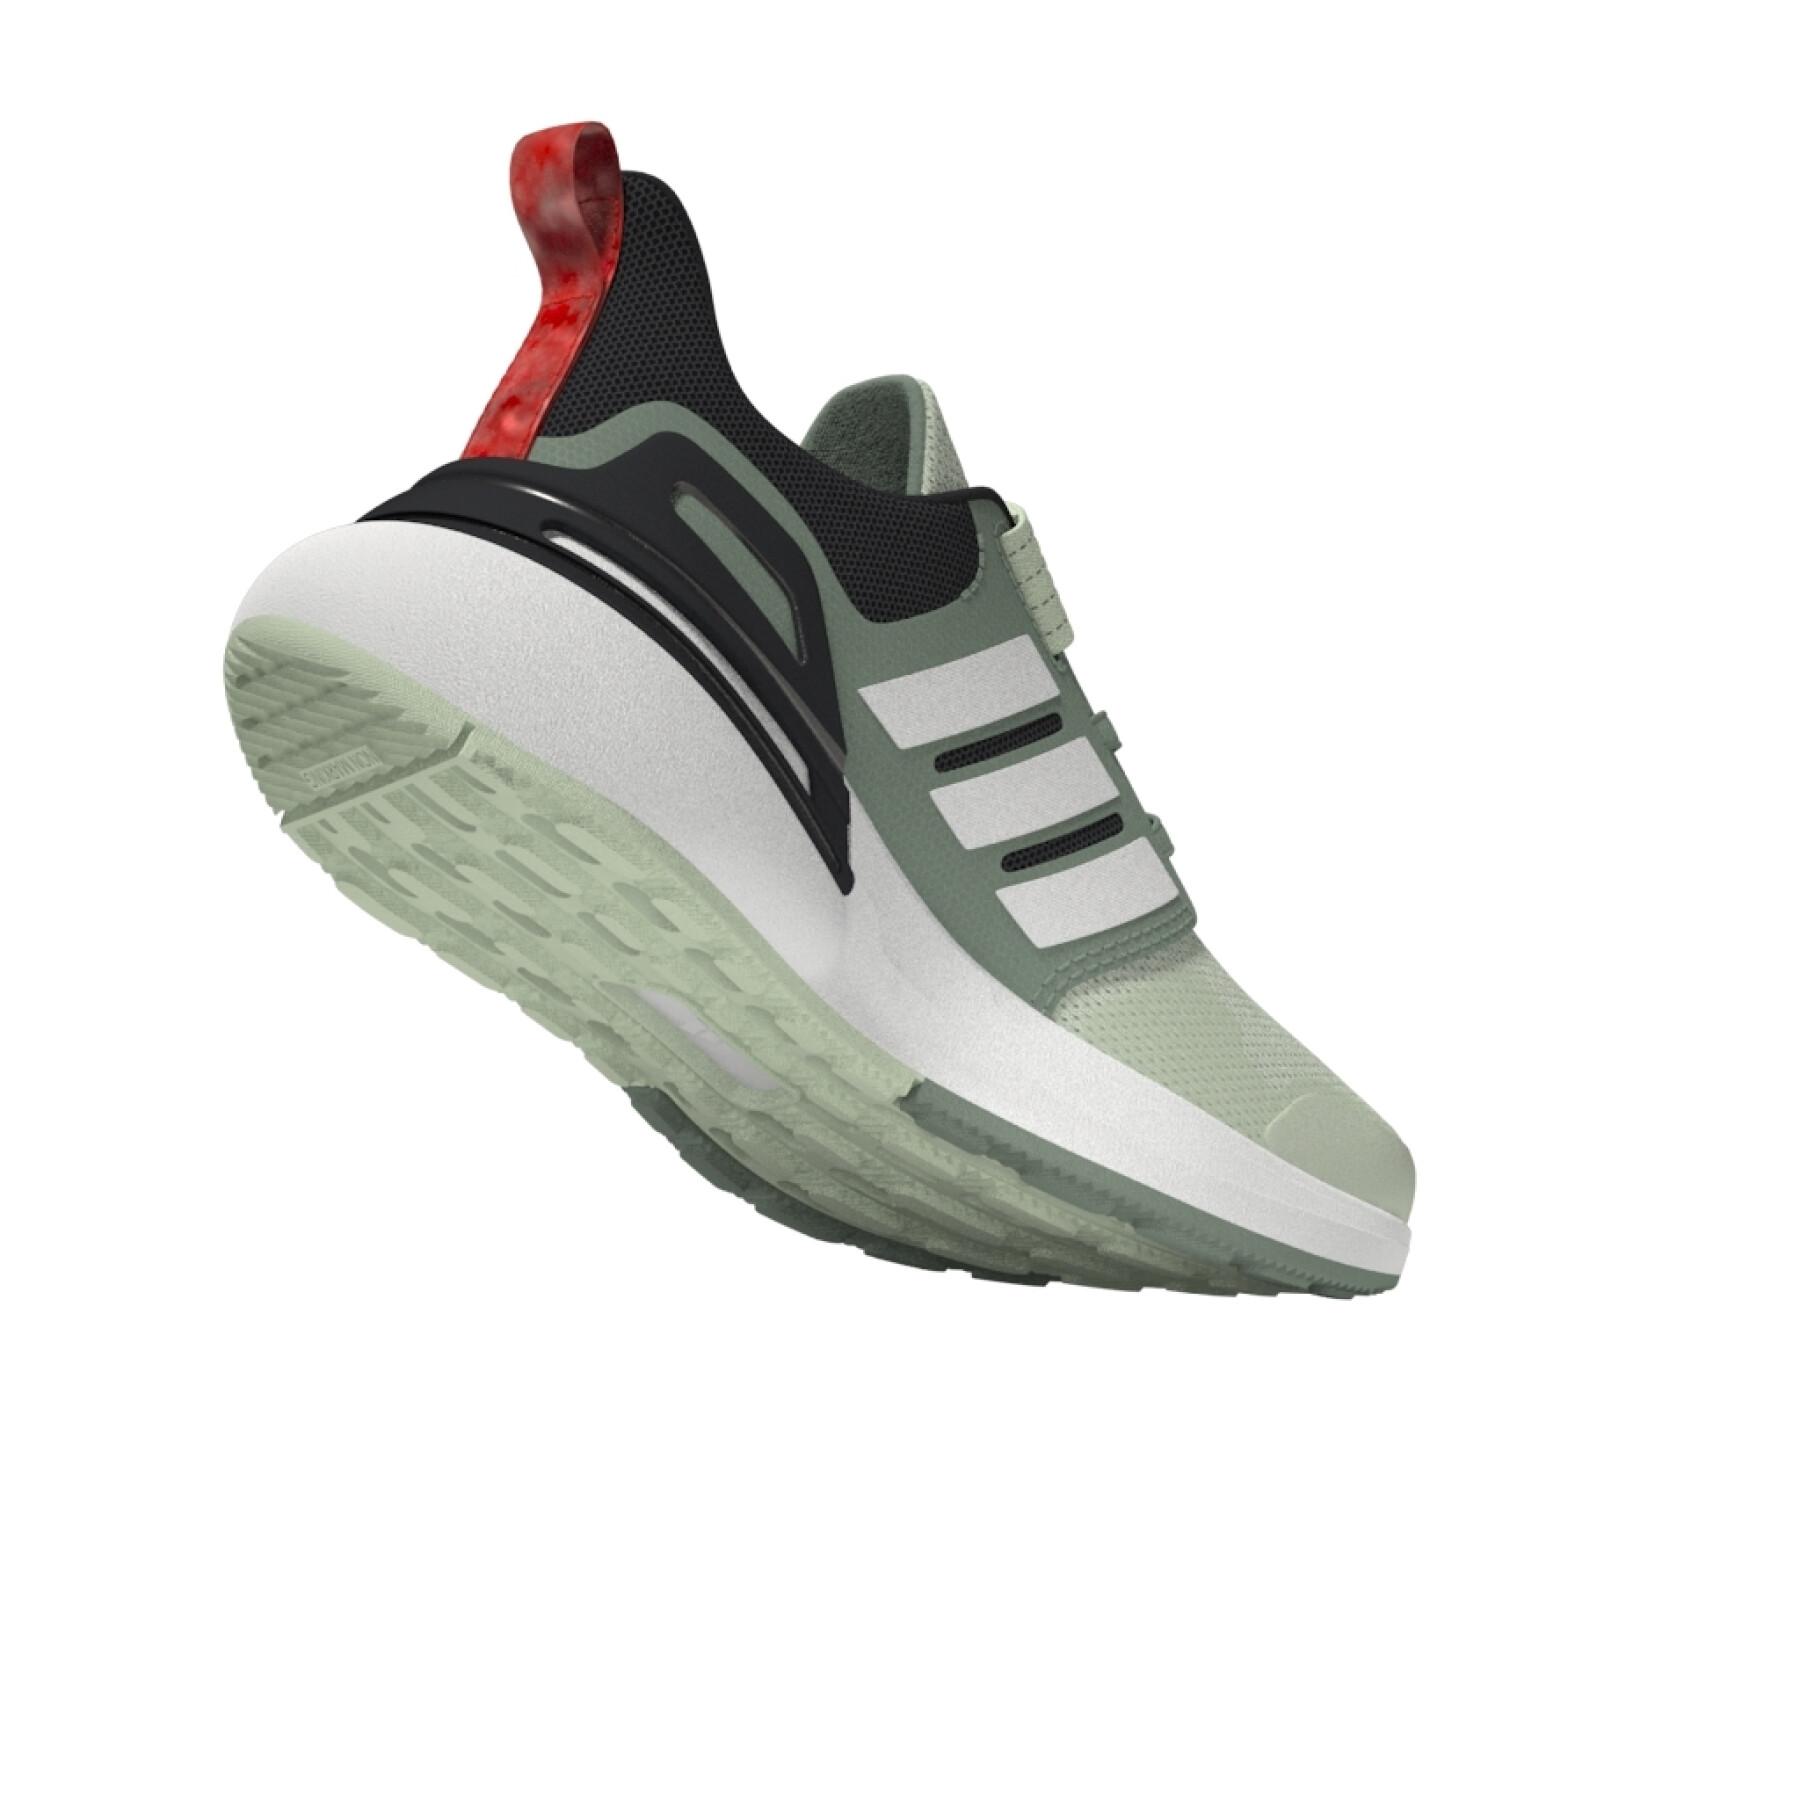 Schoenen van running elastische veter bovenband kind adidas Rapidasport Bounce